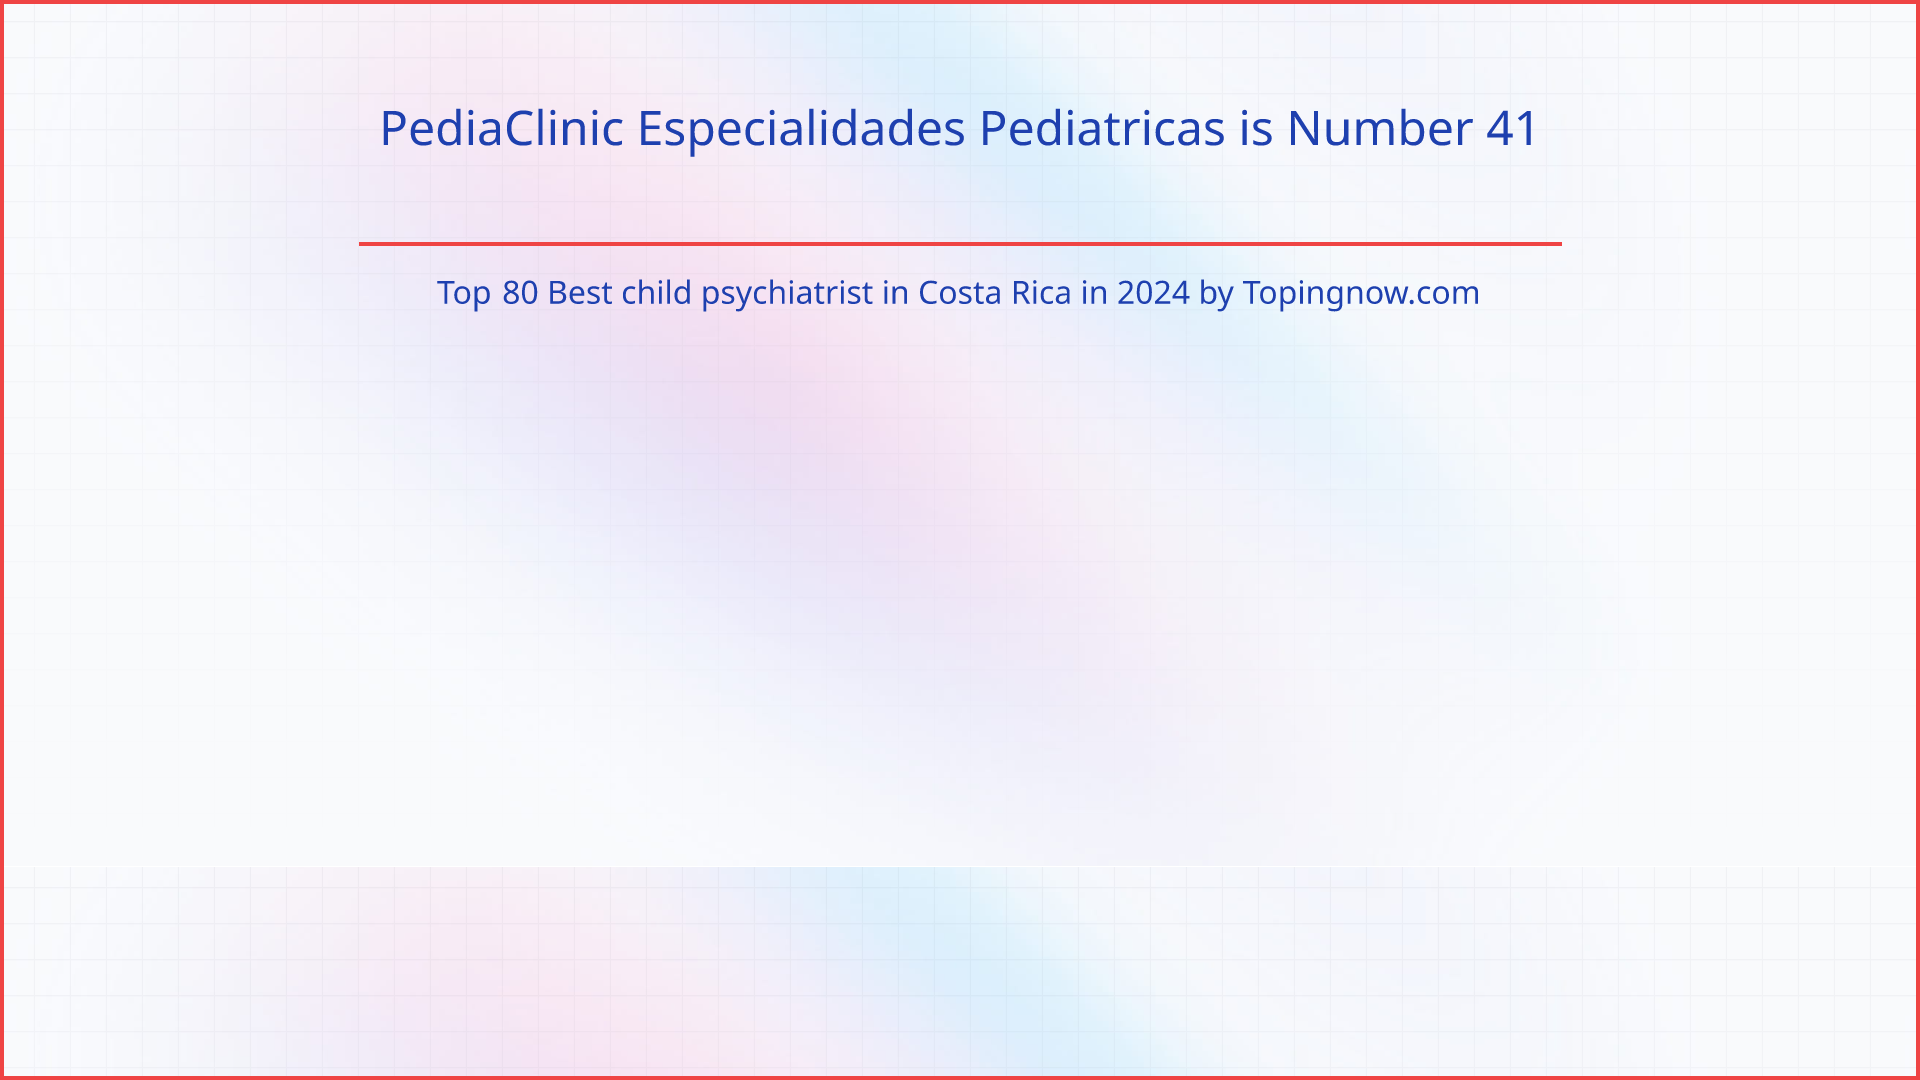 PediaClinic Especialidades Pediatricas: Top 80 Best child psychiatrist in Costa Rica in 2024